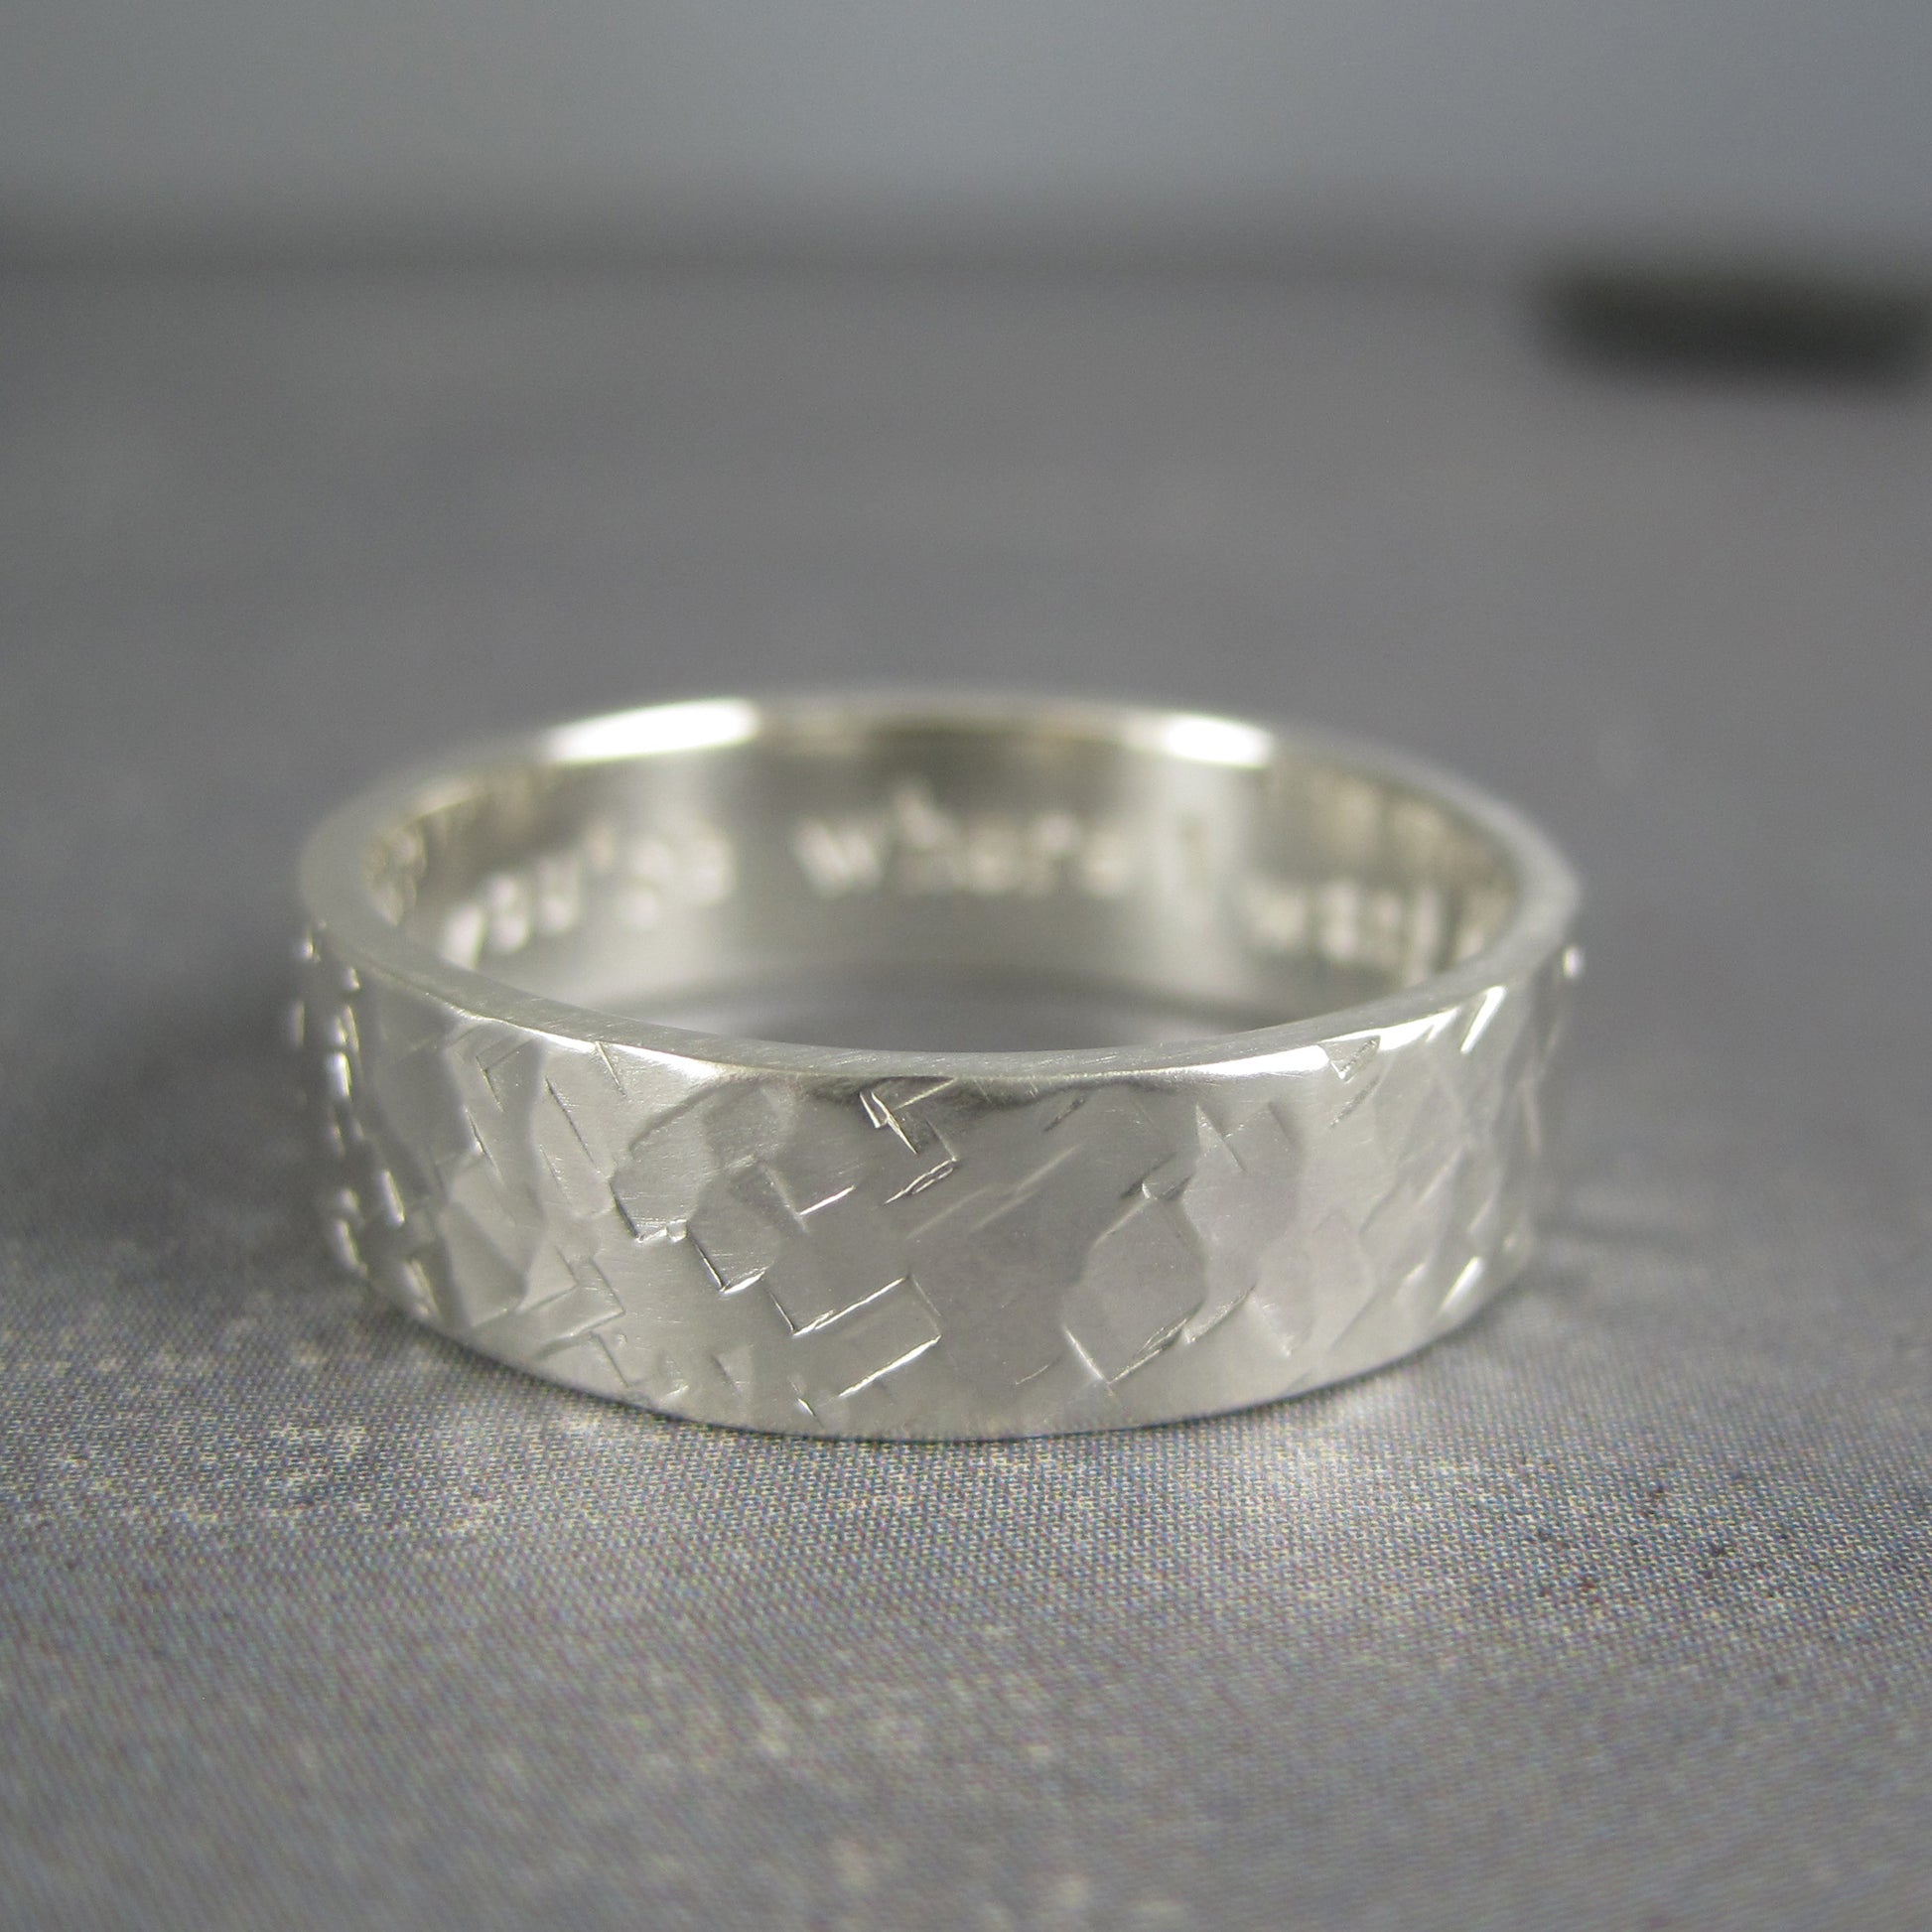 Engraved men's wedding ring